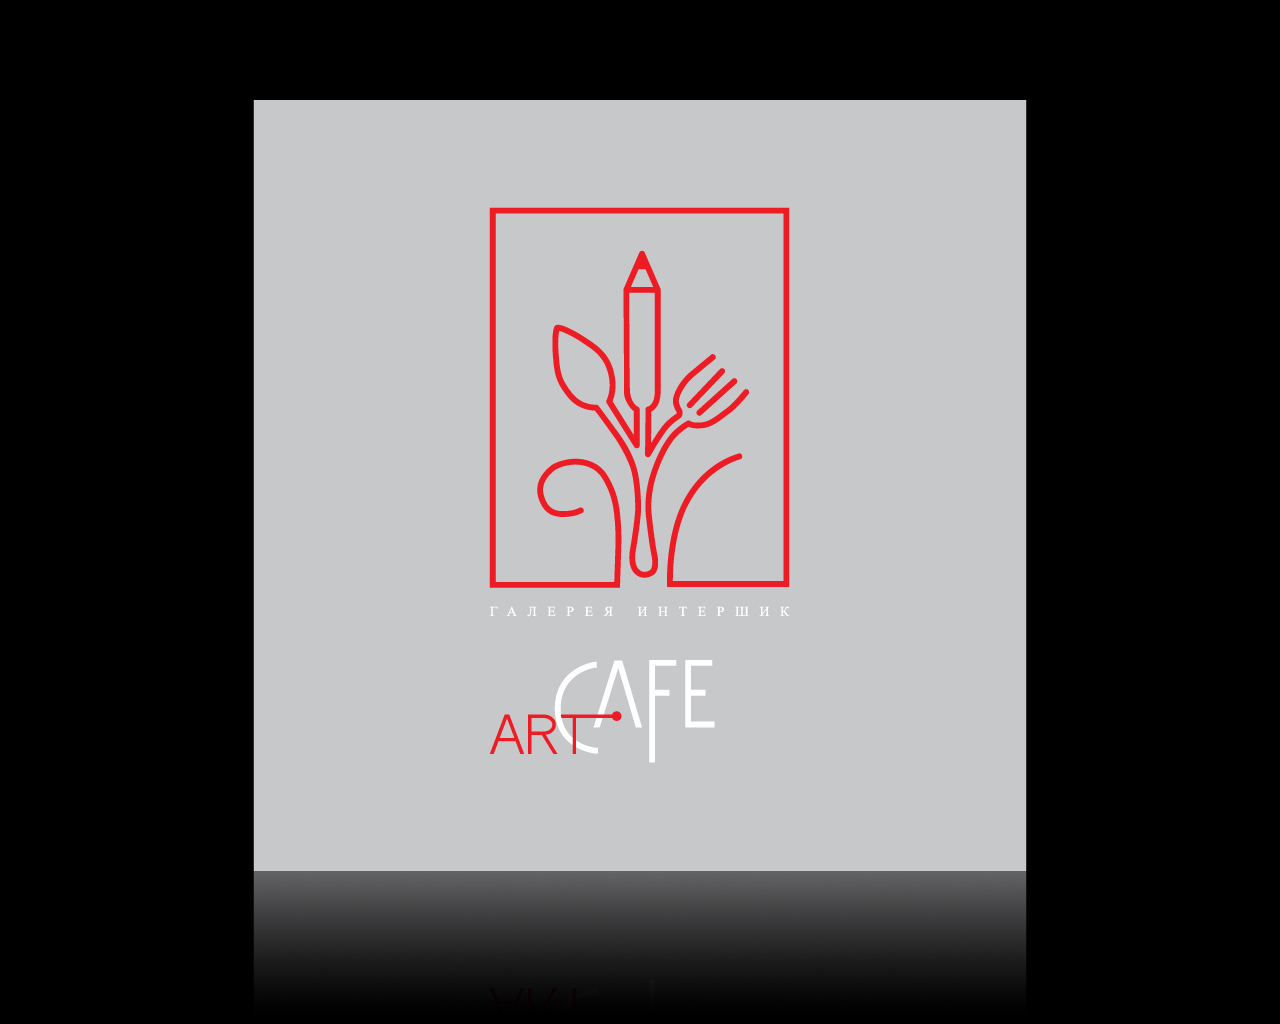 Art-Cafe